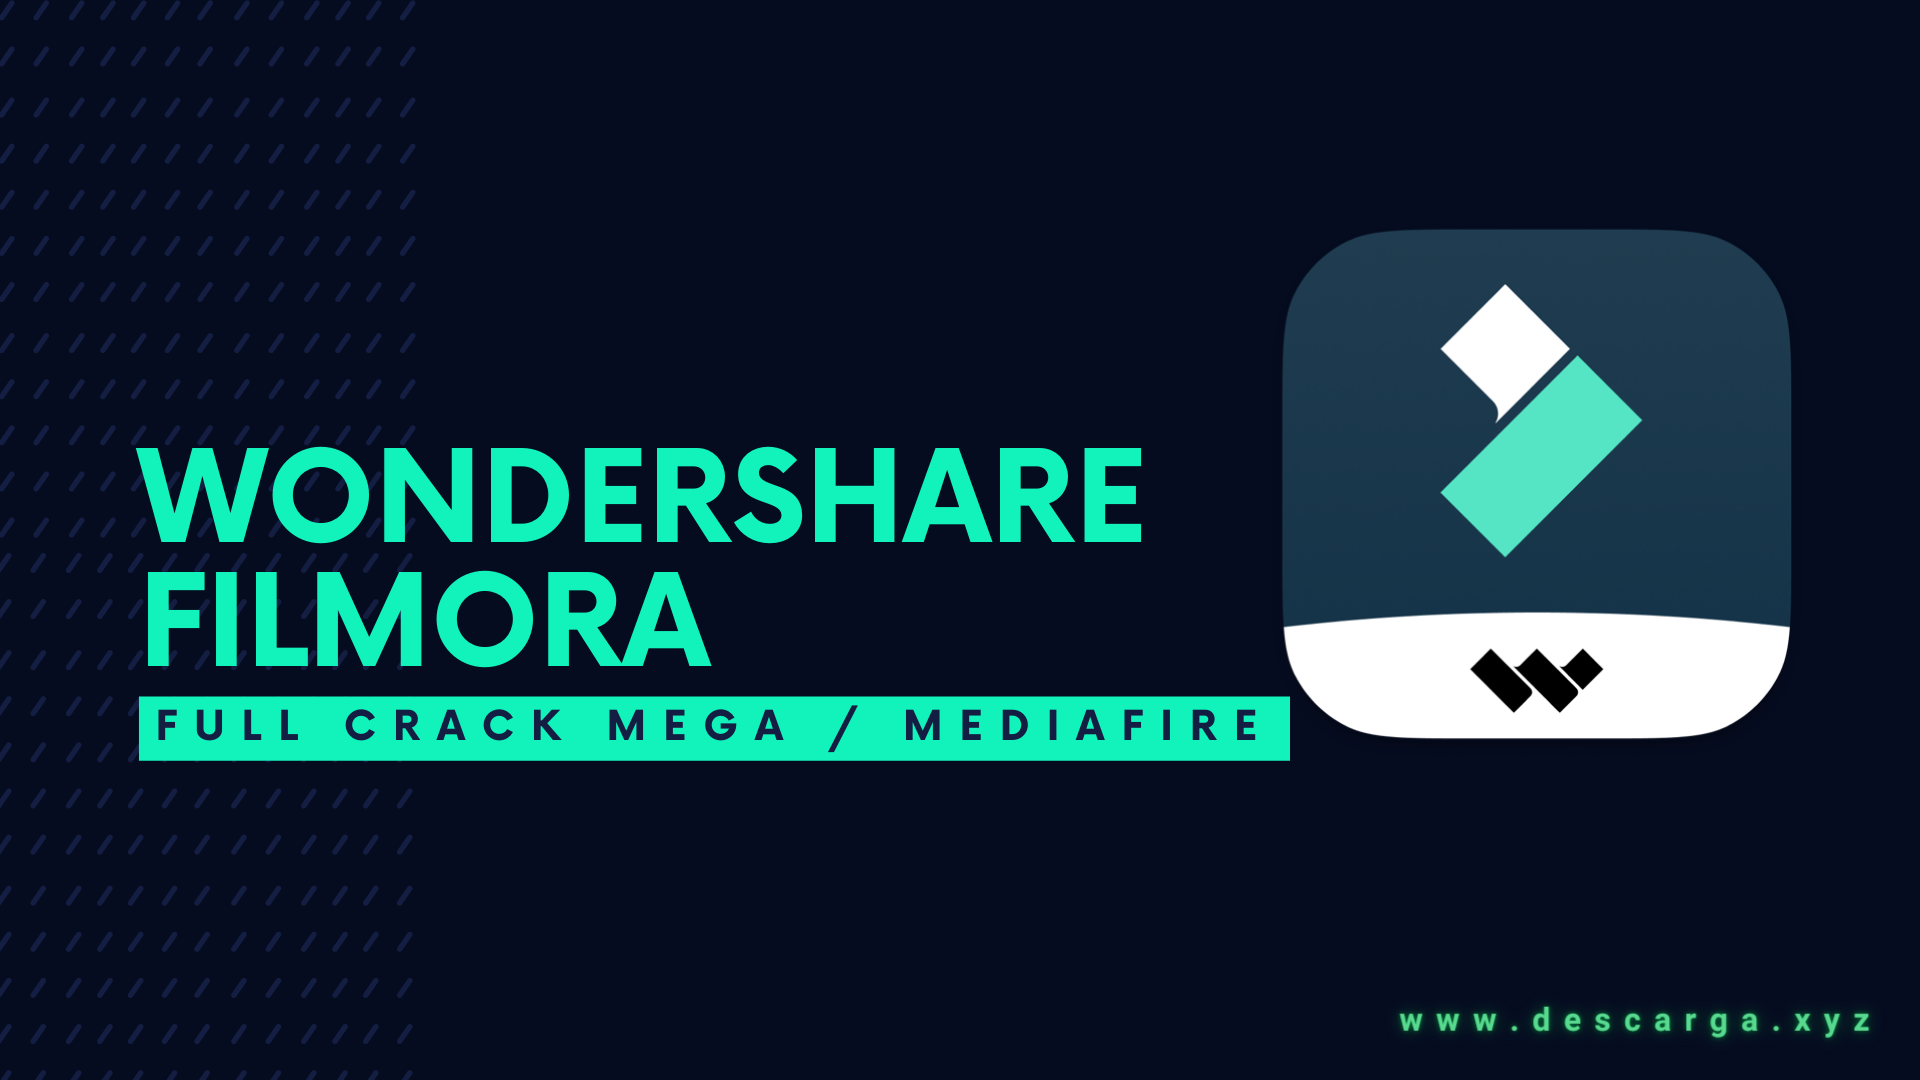 Download 🥇 Wondershare Filmora 13.0.60 FULL! CRACK! ✅ MEGA